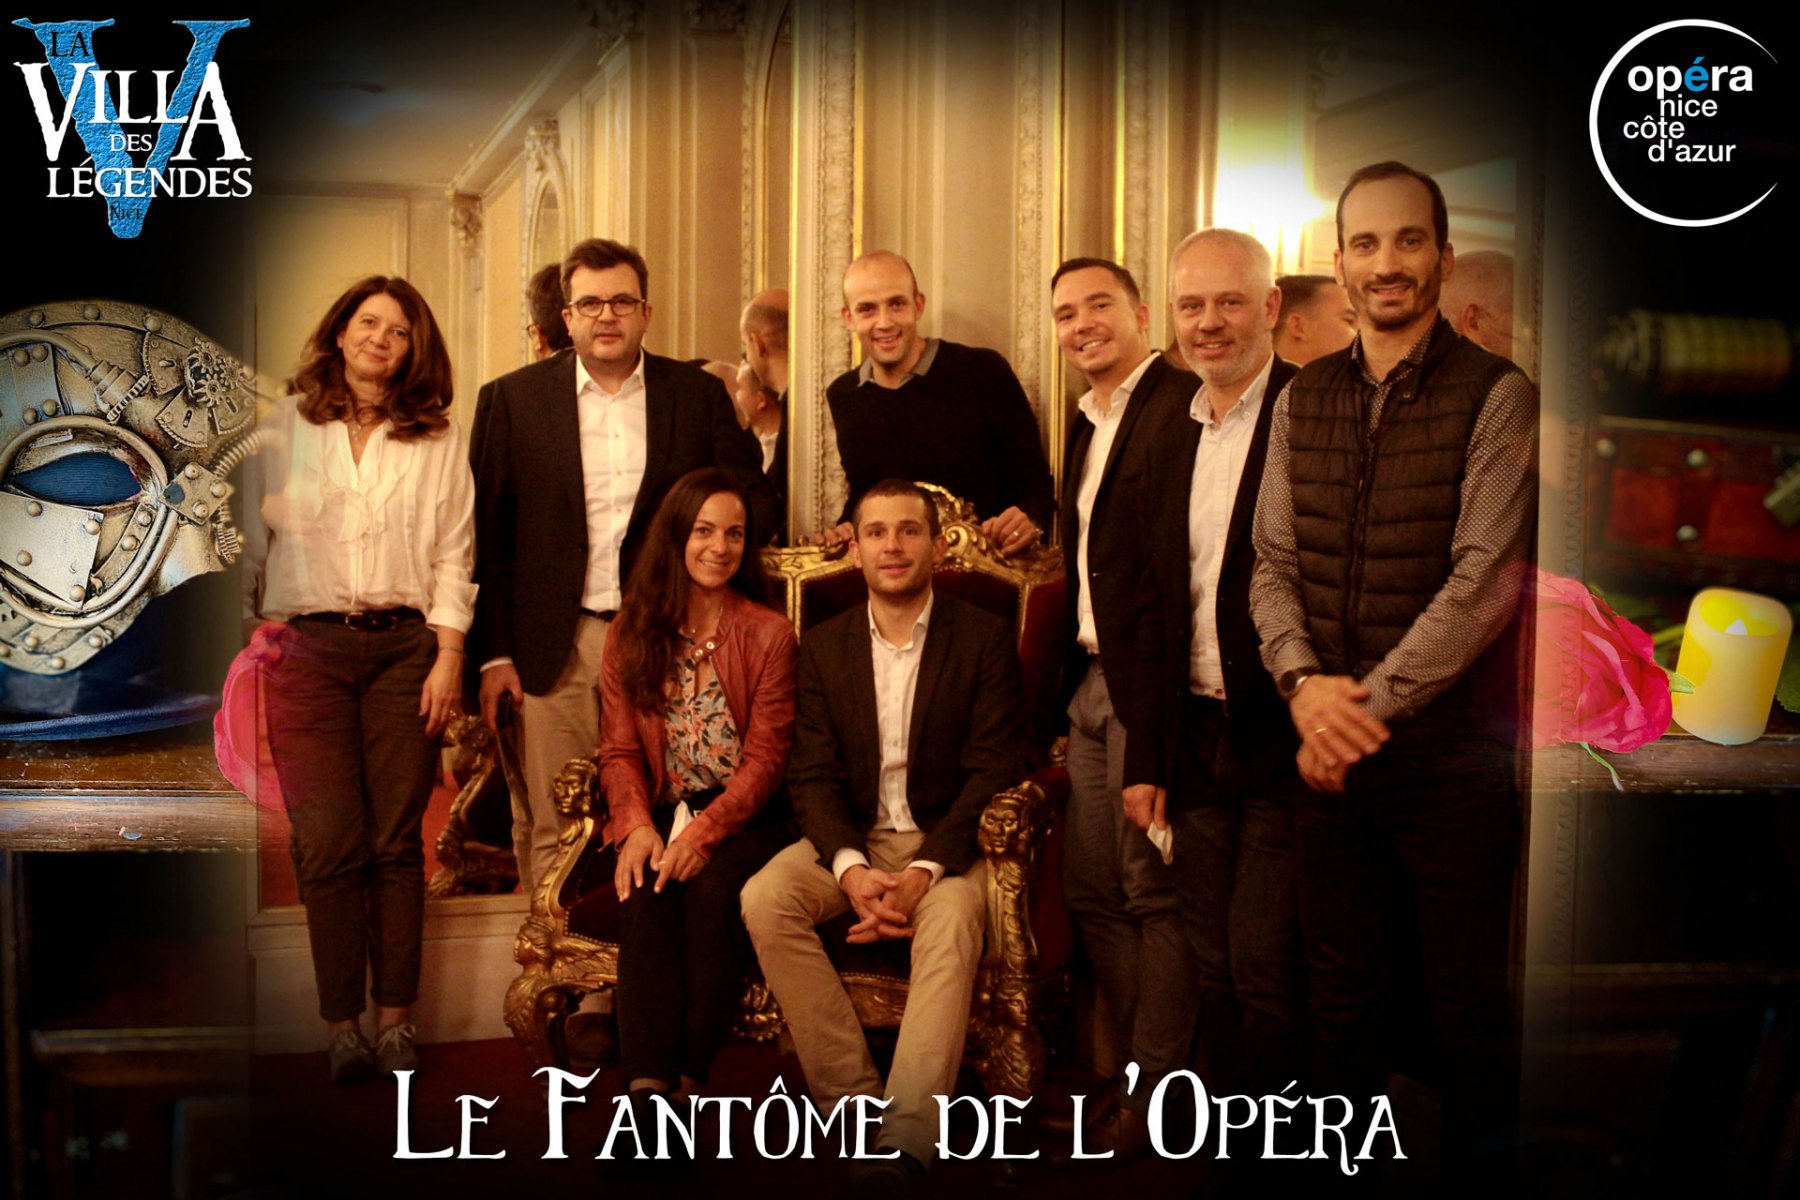 Le_Fantome_de_lOpera-Photos_Joueurs-17_nov_2021-La_Villa_des_Legendes-Opera_de_Nice-groupe_06